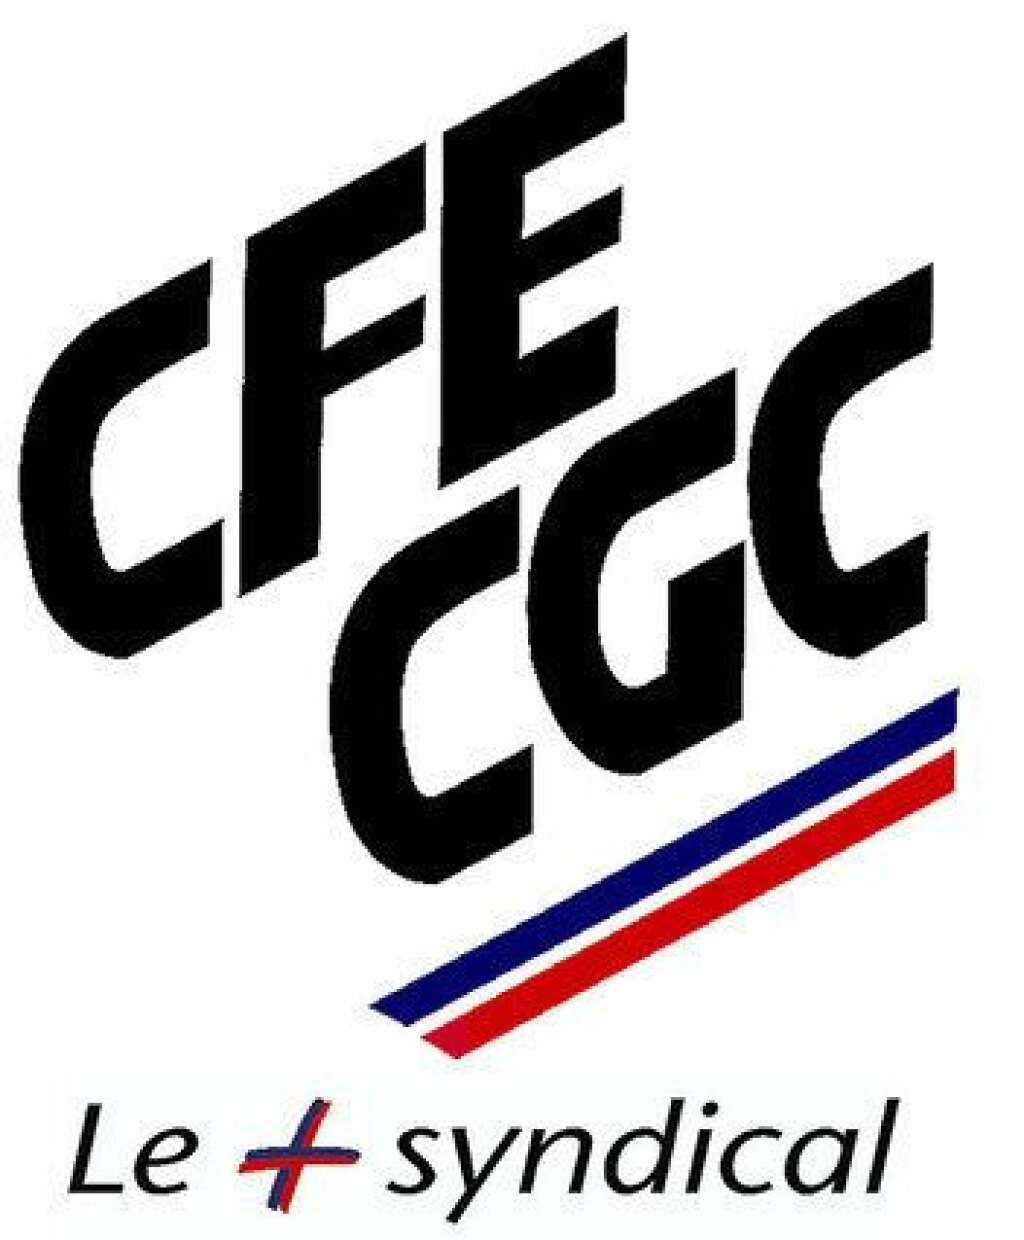 La Confédération générale des cadres (CFE-CGC) - Fondée en 1944, la Confédération française de l'encadrement - Confédération générale des cadres (CFE/CGC) représente les intérêts des cadres dans les entreprises publiques ou privées.   Officiellement apolitique, elle est classée parmi les syndicats dits "réformistes".   Sa présidente actuelle est Carole Couvert.